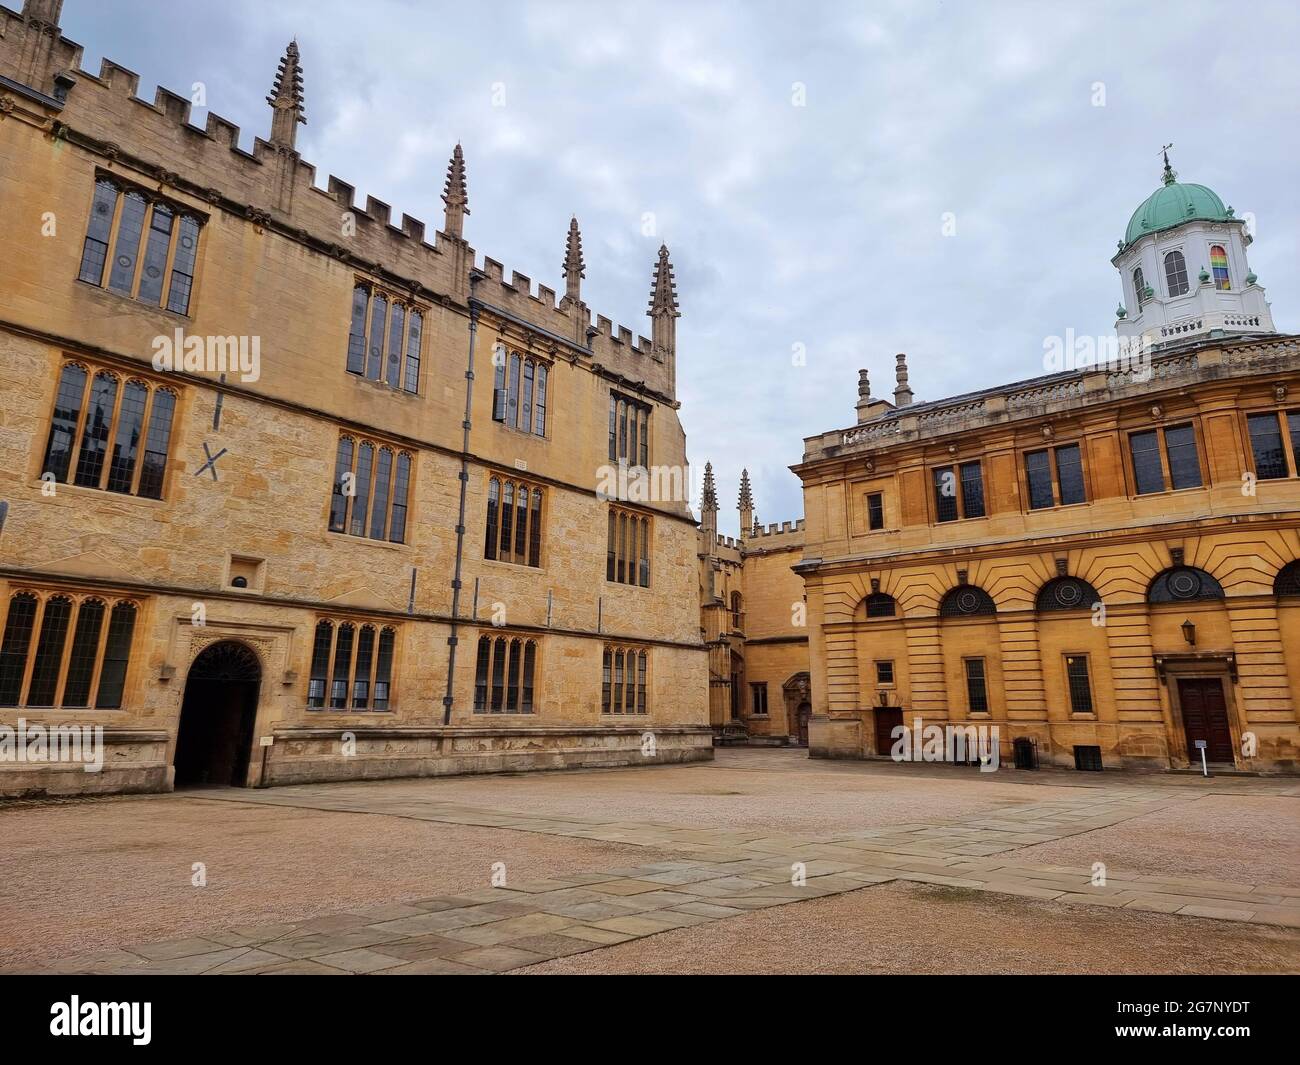 Vue sur la célèbre bibliothèque Bodleian d'Oxford, Angleterre. La bibliothèque Bodleian est la principale bibliothèque de recherche de l'Université d'Oxford, et est l'une des plus anciennes bibliothèques d'Europe, et tire son nom de son fondateur Sir Thomas Bodley. Avec plus de 13 millions d'imprimés, c'est la deuxième plus grande bibliothèque de Grande-Bretagne après la British Library. Connu par les chercheurs d'Oxford sous le nom de « Bodley » ou « le BOD », il fonctionne principalement comme bibliothèque de référence et, en général, les documents ne peuvent pas être retirés des salles de lecture. Royaume-Uni. Banque D'Images